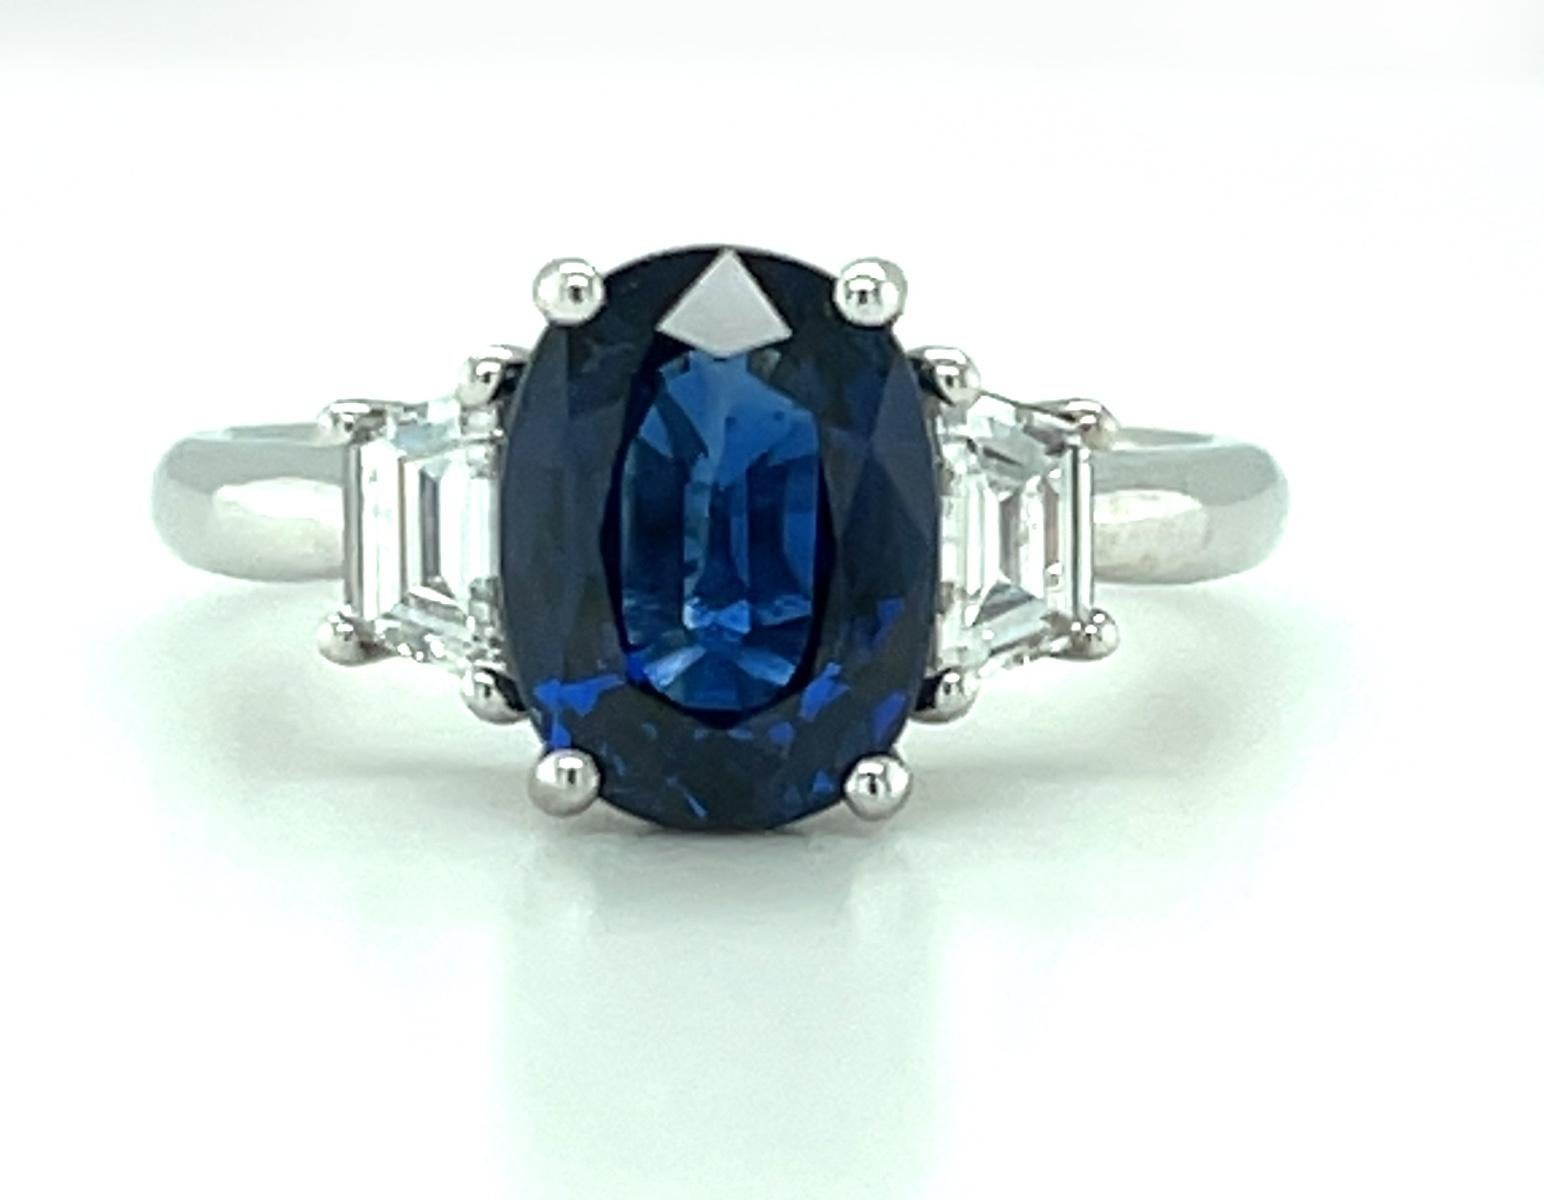 Dieser klassische Verlobungsring mit drei Steinen besteht aus einem wunderschönen blauen Saphir von 2,18 Karat, der in Platin gefasst ist, und einem exquisiten Paar feiner Diamanten. Der Saphir hat eine satte, blaue Farbe, deren Form durch die